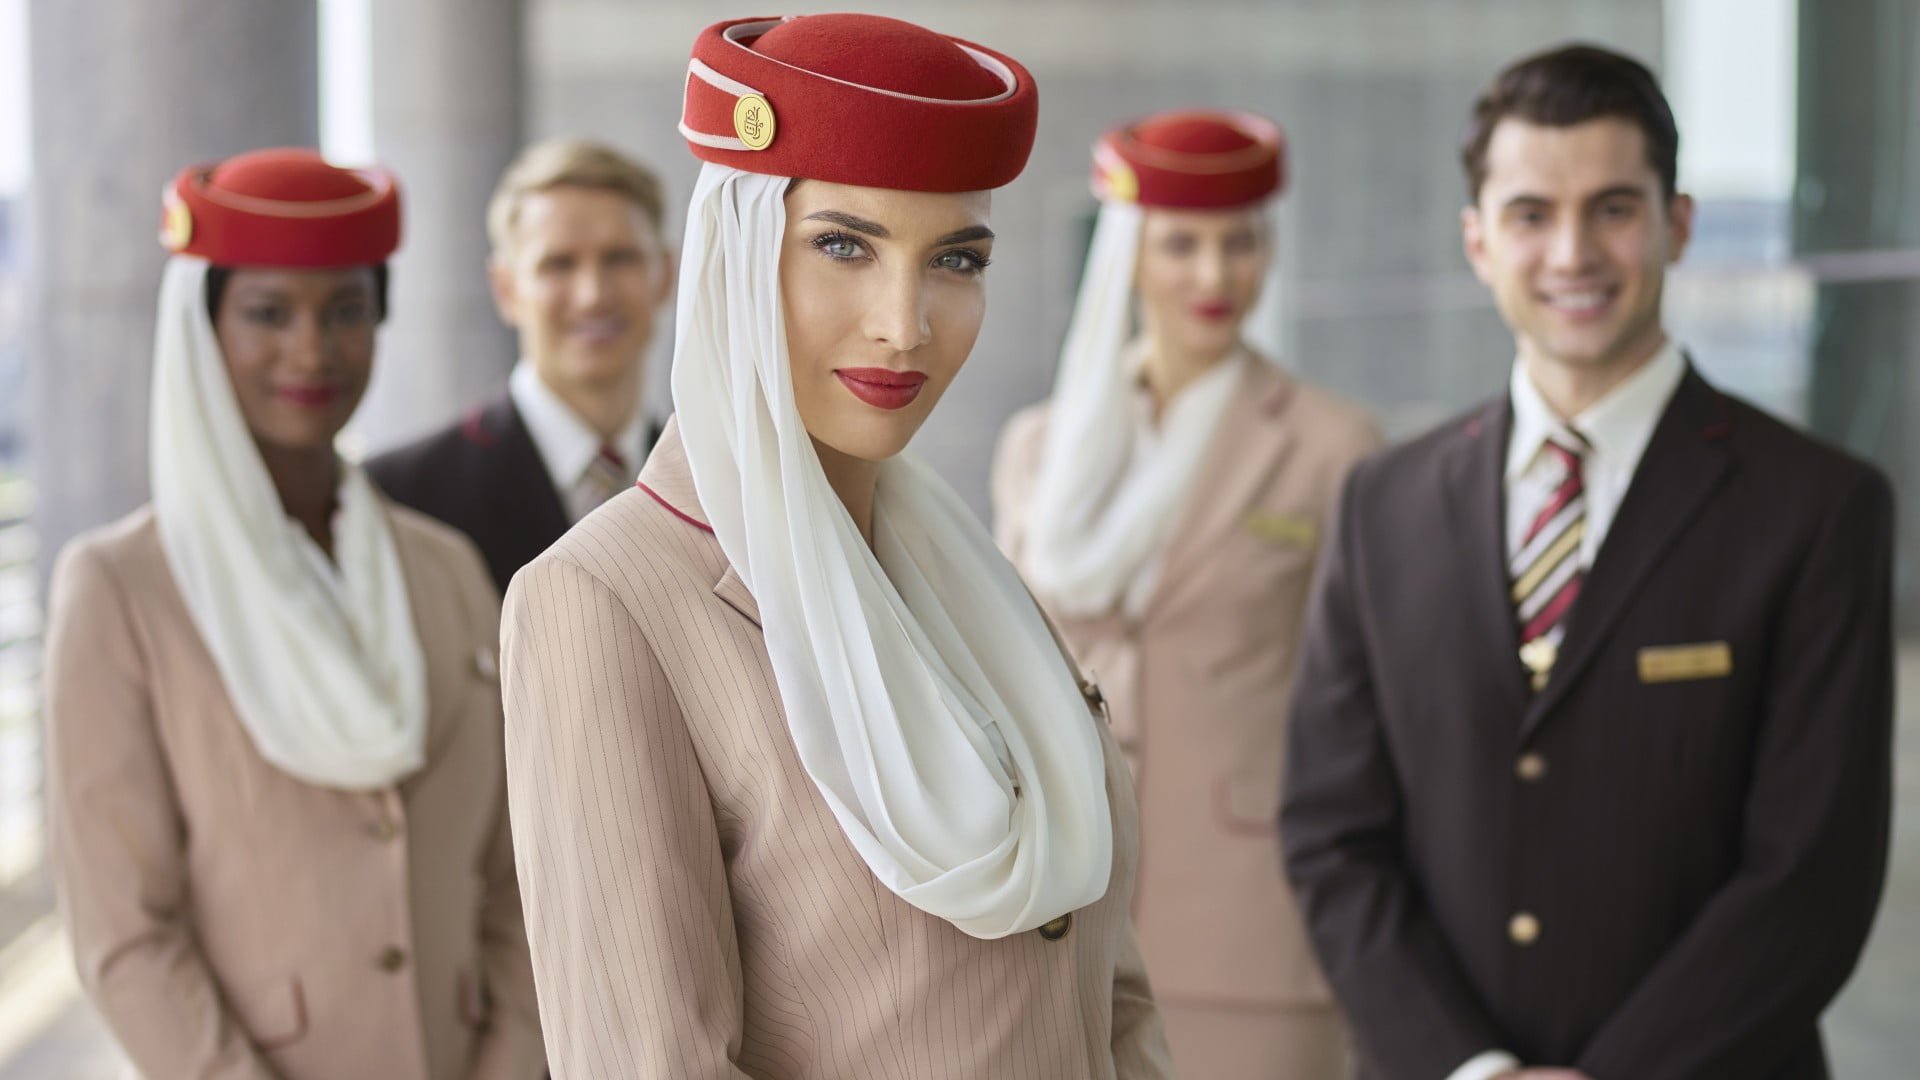 Emirates 6 bin personel alacağını duyurdu